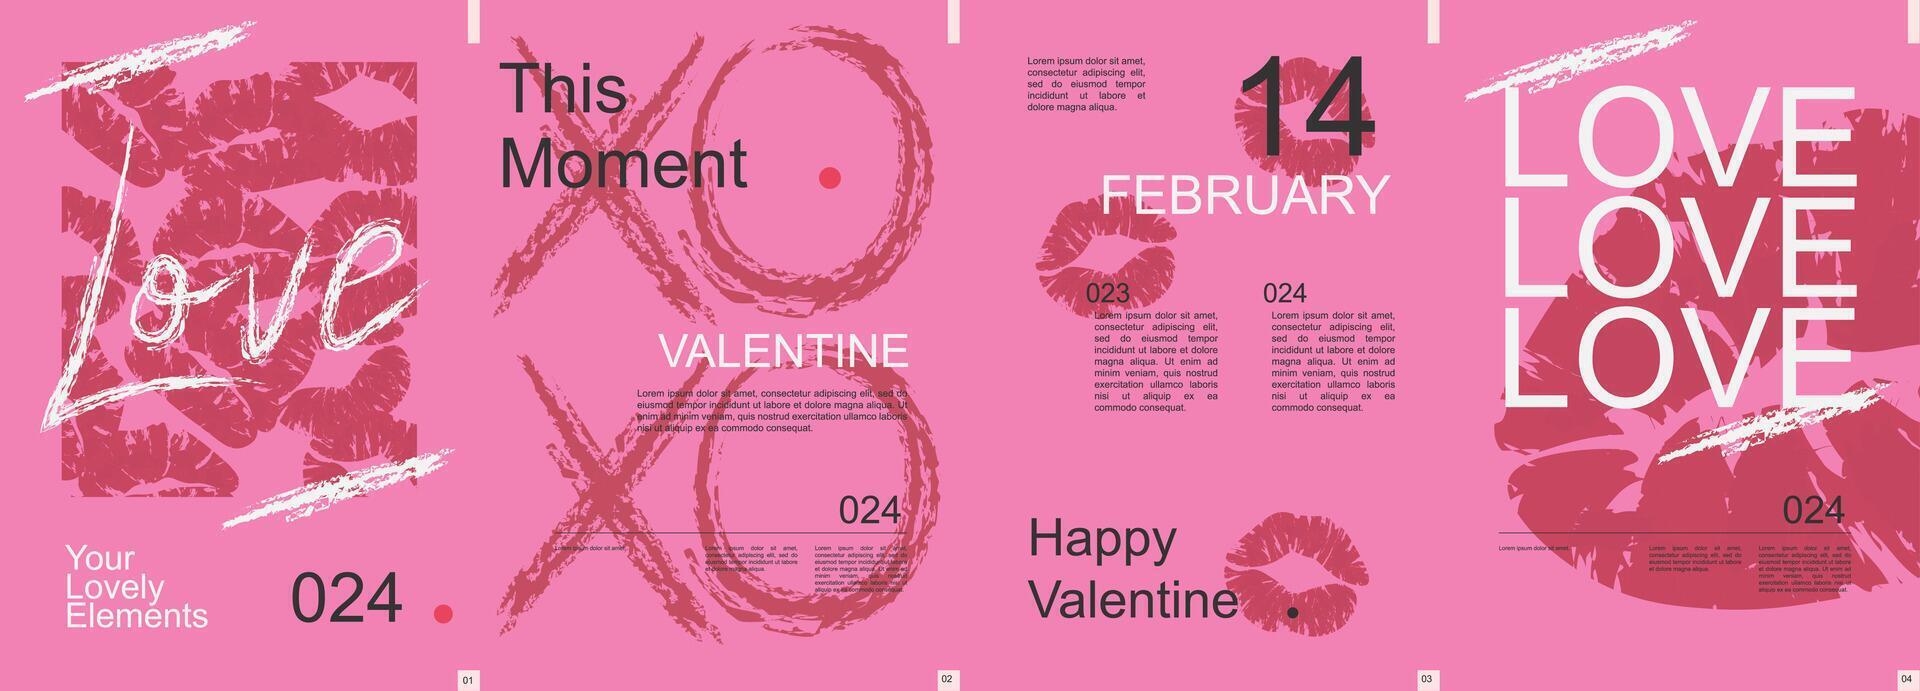 Valentin journée moderne bannière avec branché minimaliste typographie conception. affiche modèles avec femelle lèvres baiser imprimer, l'amour et abstrait géométrique formes et texte éléments sur rose. vecteur illustration.